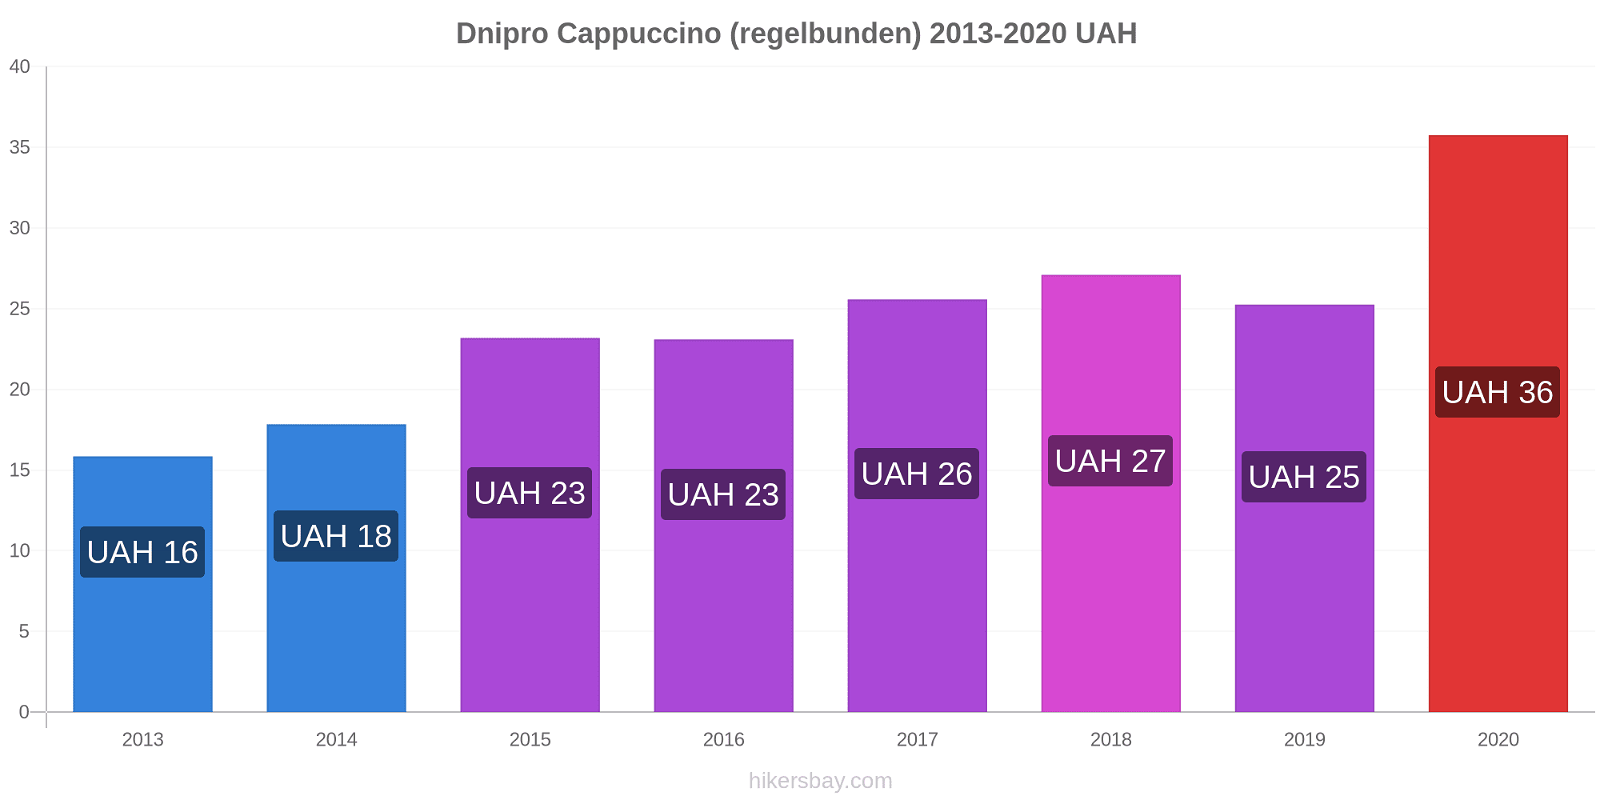 Dnipro prisförändringar Cappuccino (regelbunden) hikersbay.com